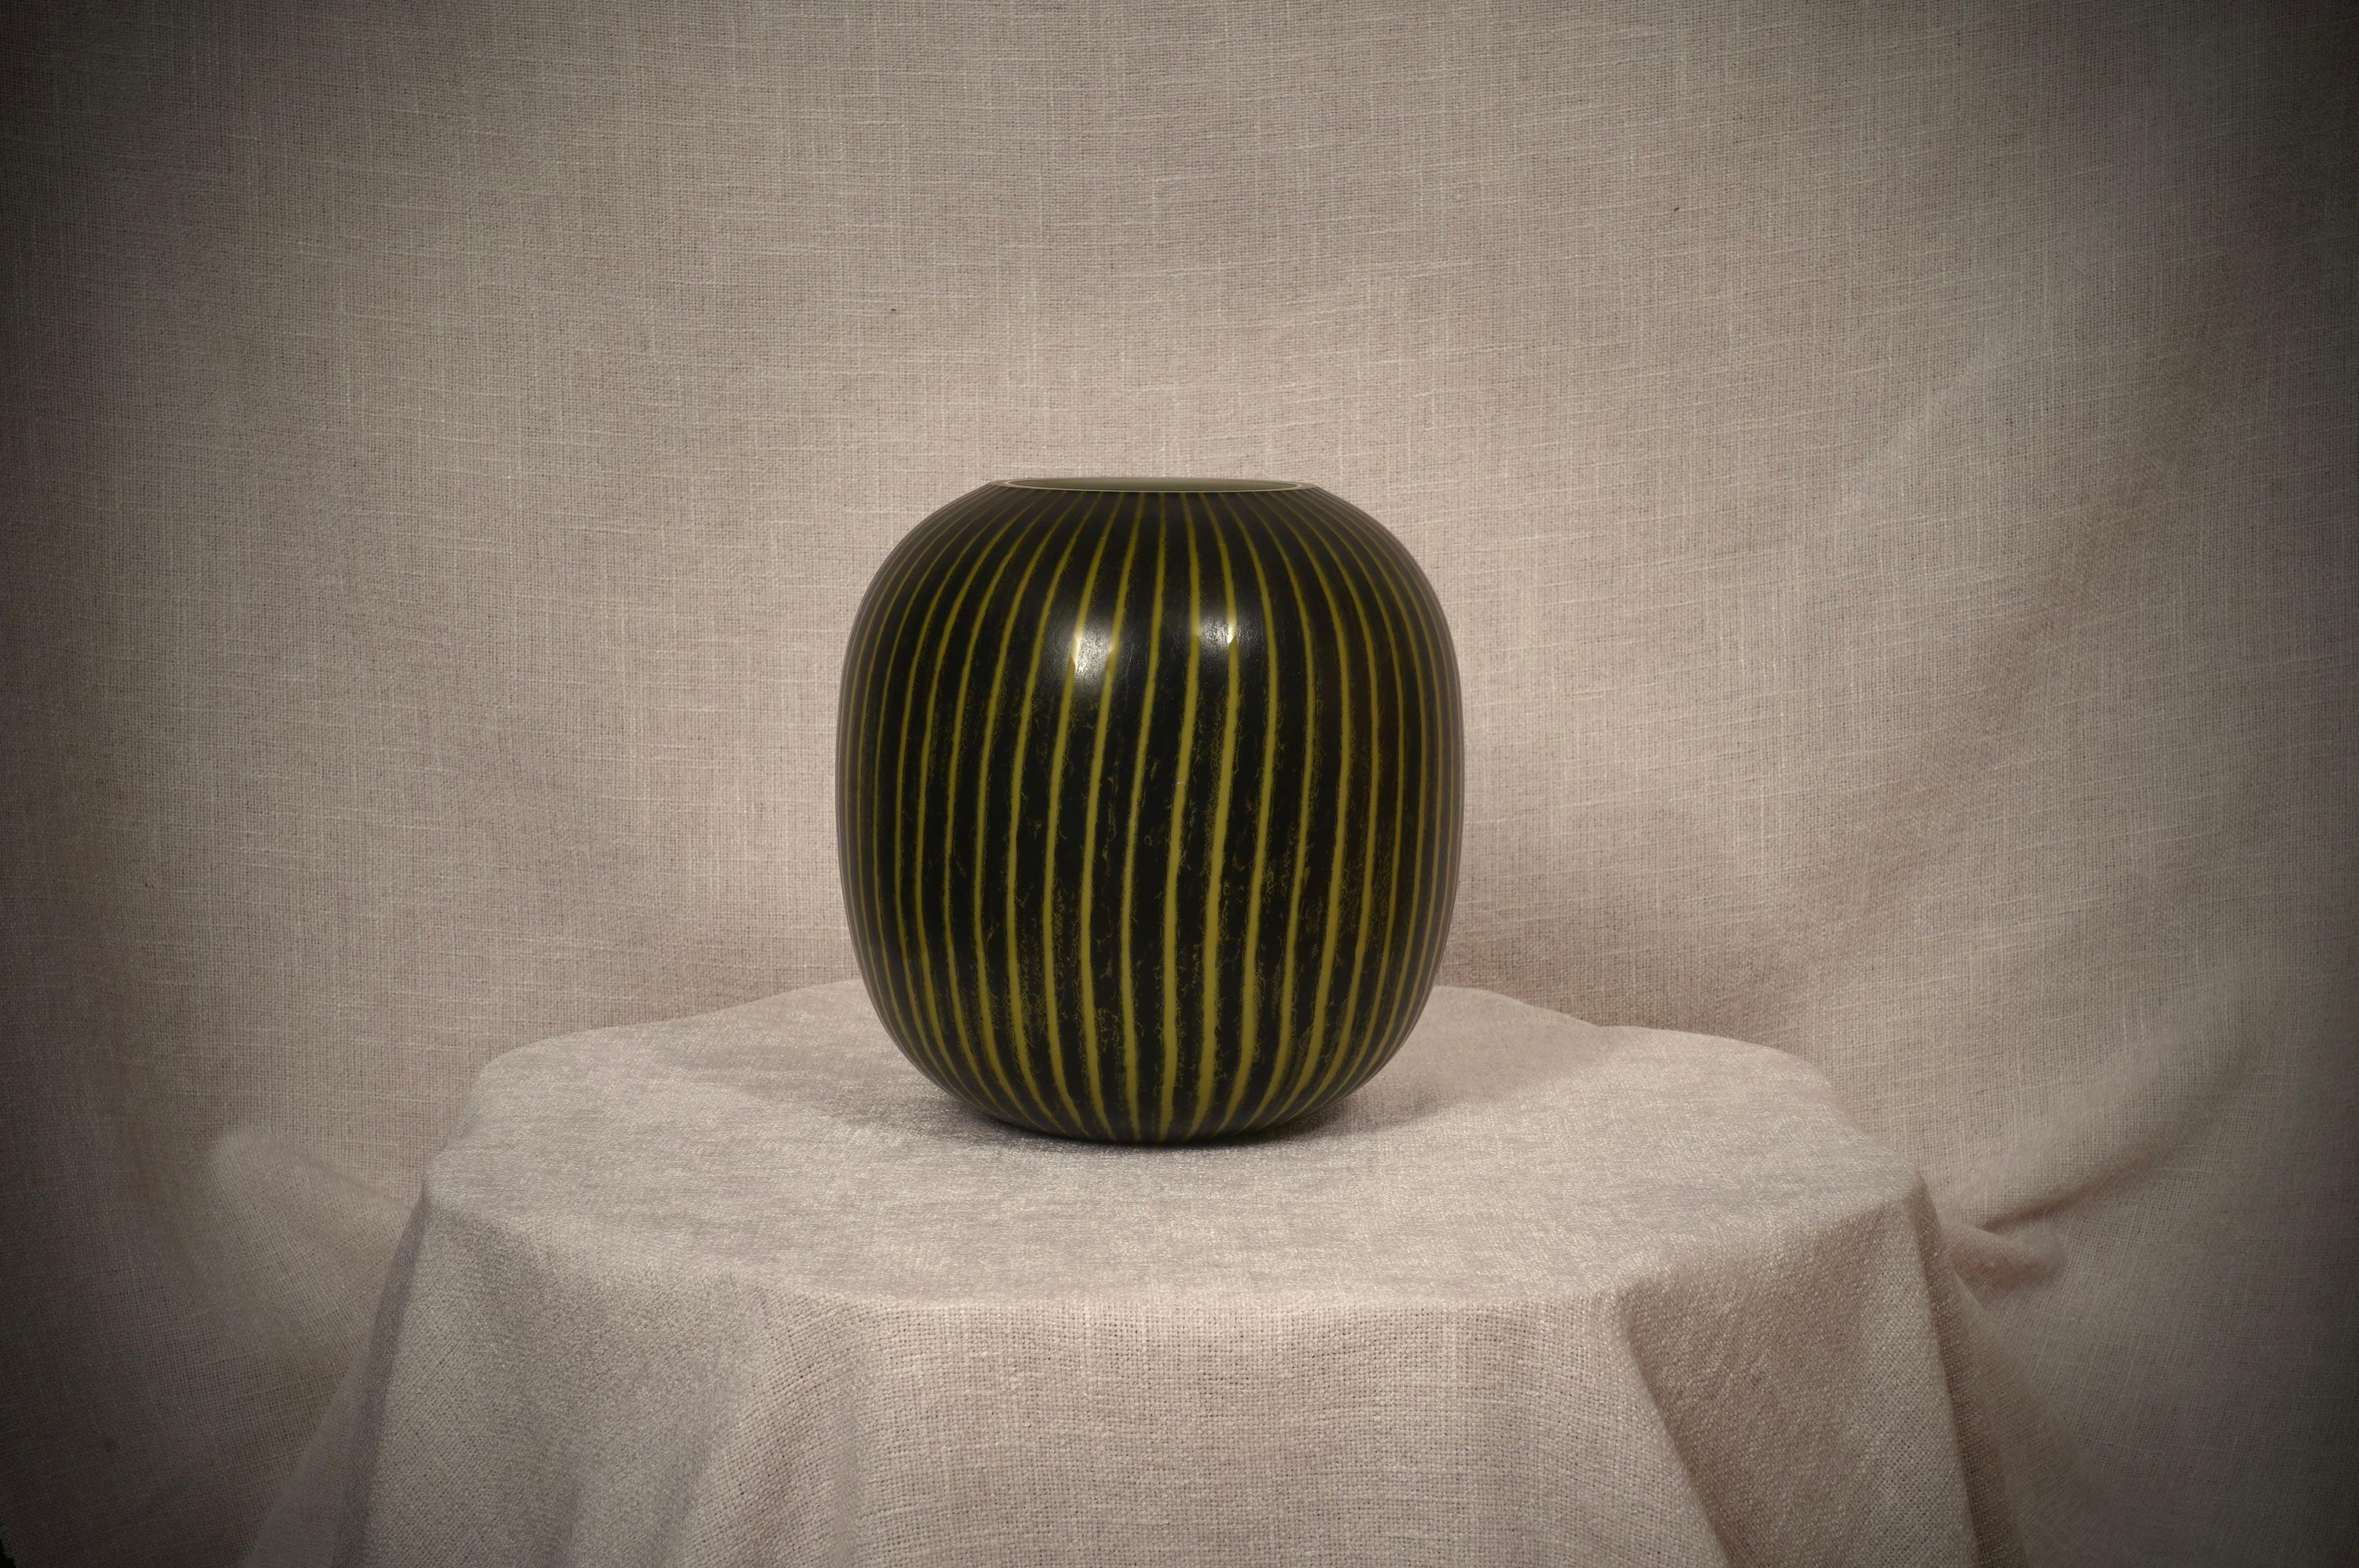 Magnifique vase de fabrication Murano, au design classique d'amphore. Très léger, fin et délicat, avec une belle couleur jaune vif qui ressort sur un fond noir.

Le vase de Murano, soufflé entièrement à la main, est d'une légèreté sans précédent ;